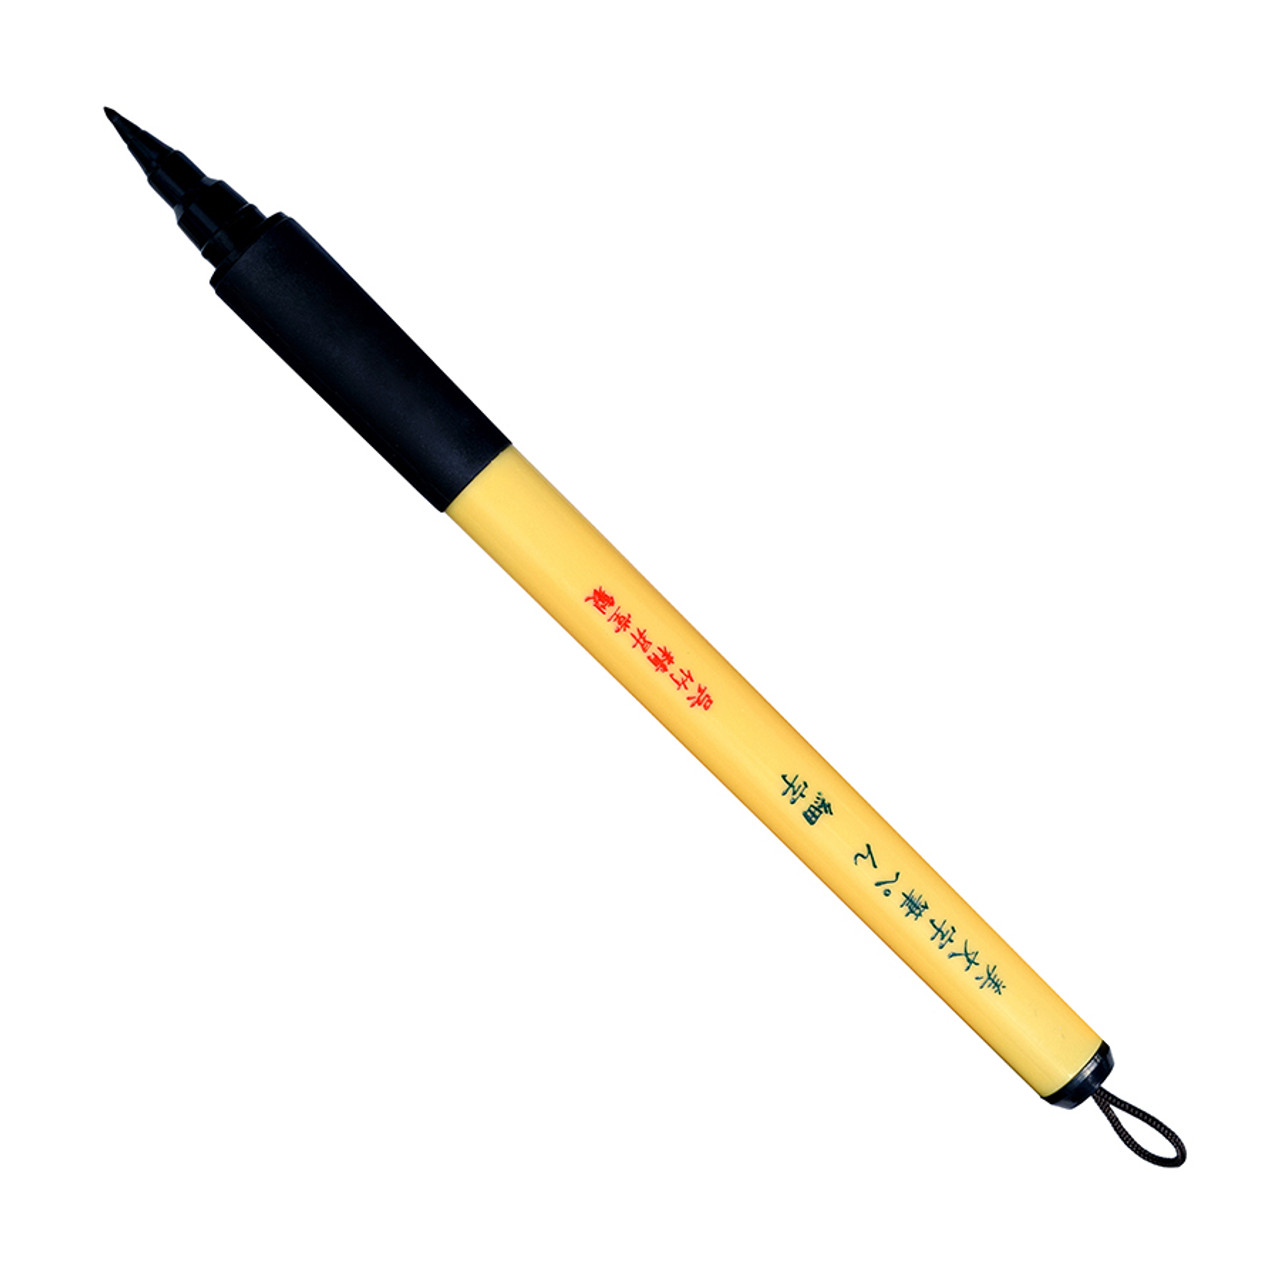  Kuretake Brush Pen (No.22), for lettering